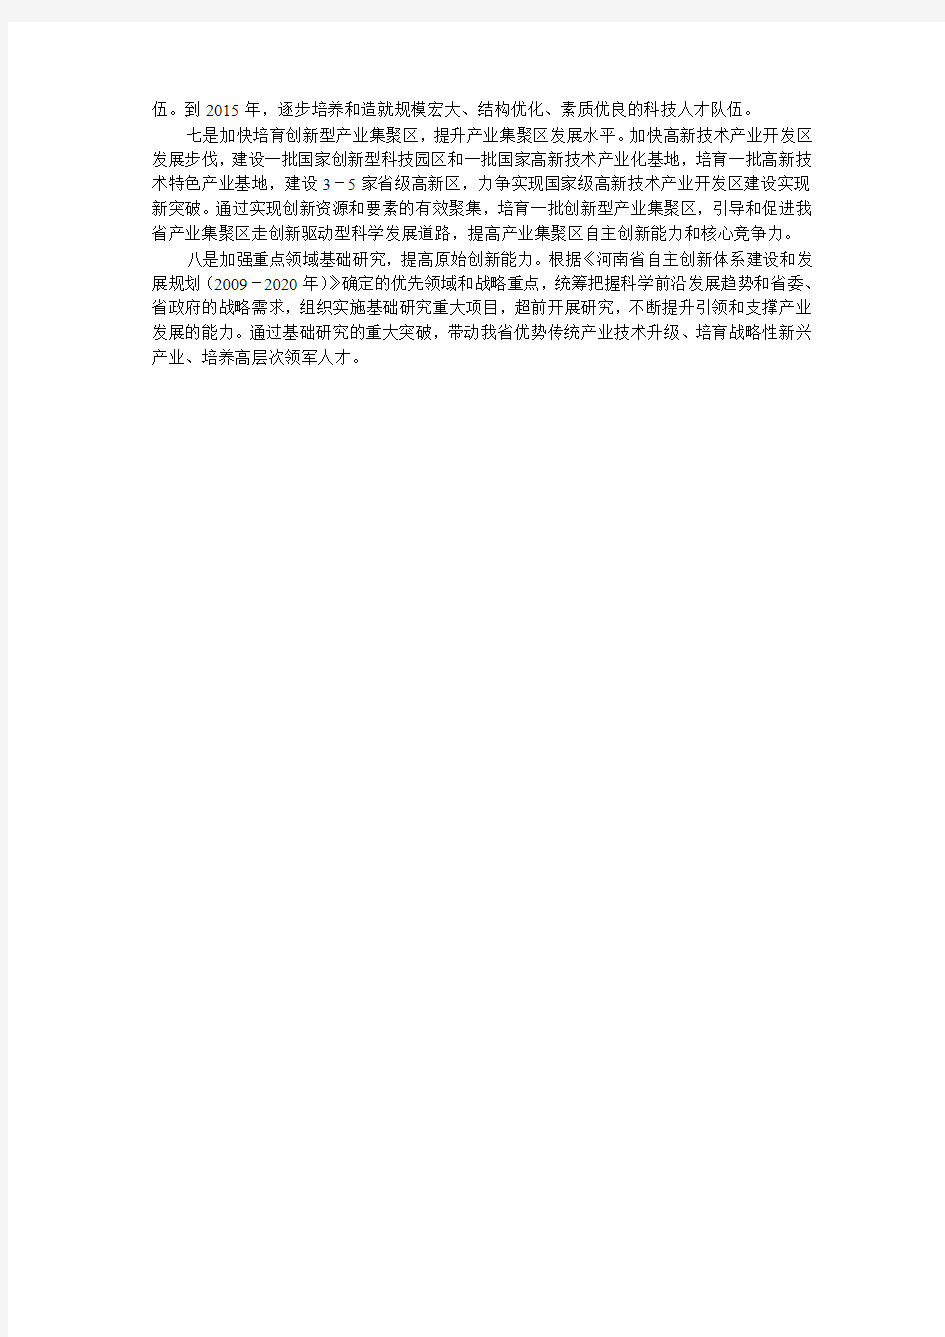 河南省“十二五”科学技术发展规划出台